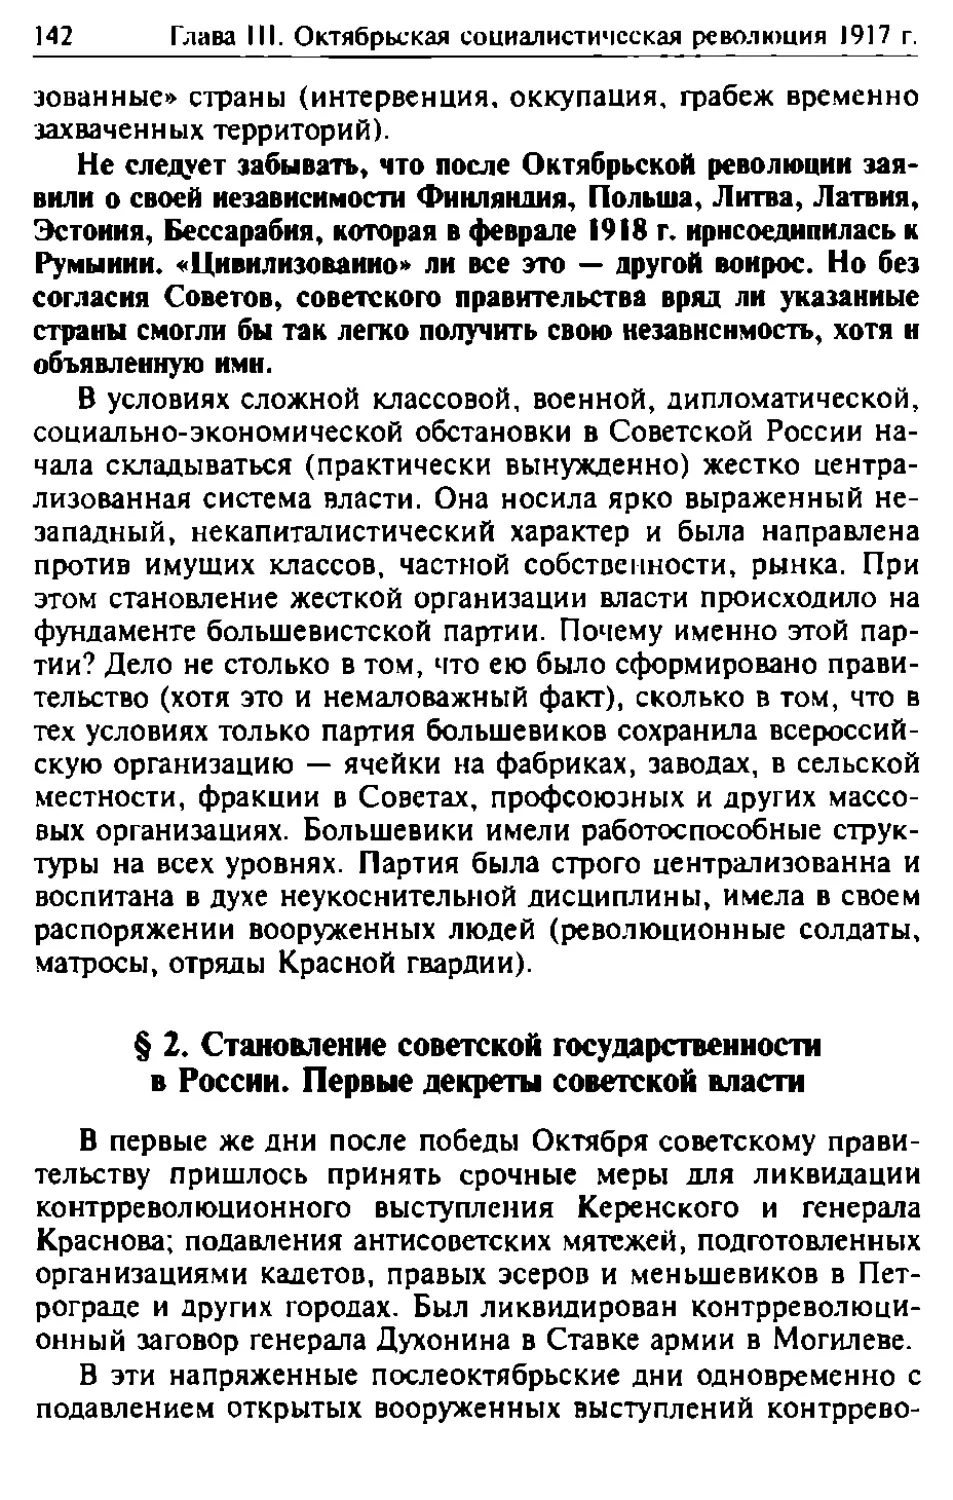 § 2. Становление советской государственности в России. Первые декреты советской власти